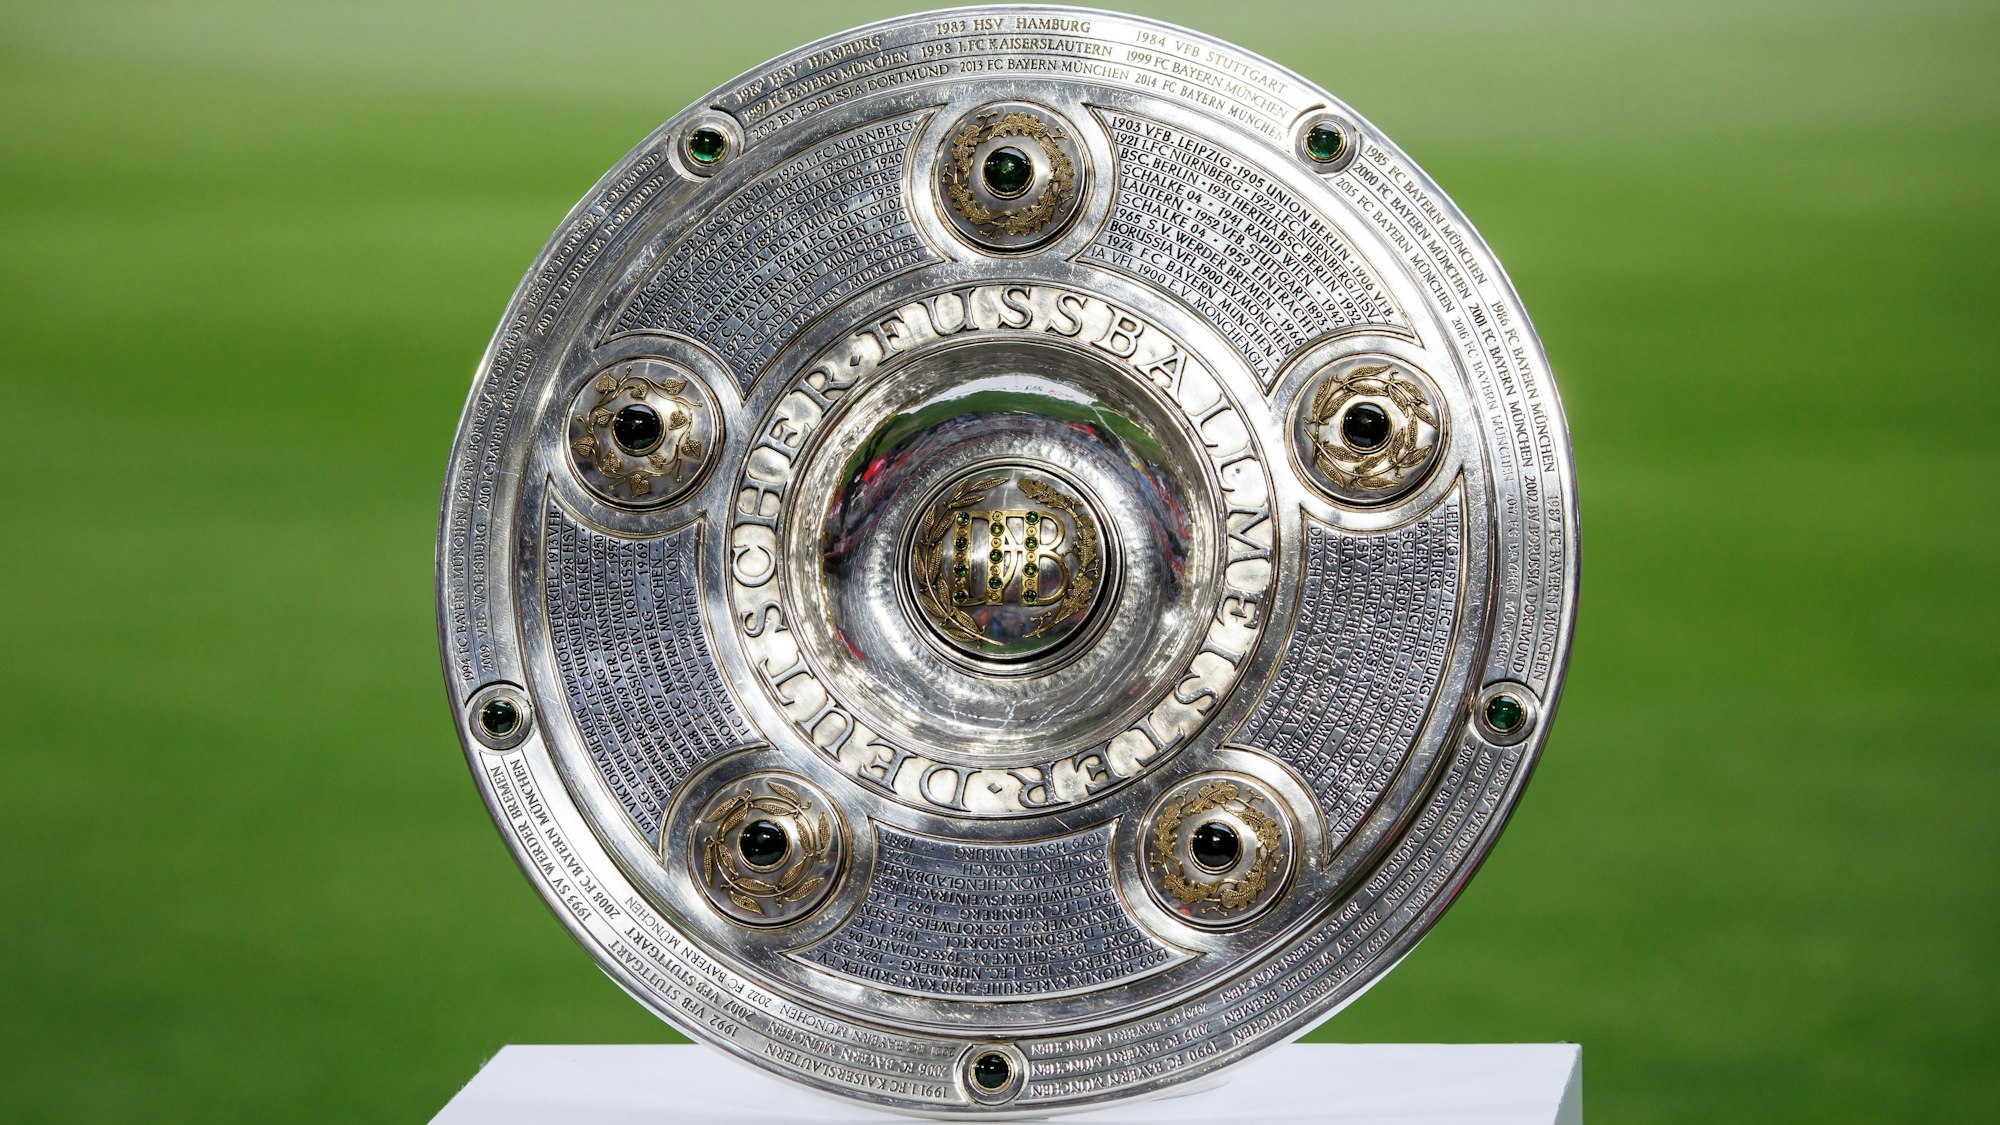 Zu sehen ist eine Kopie der Meisterschale des Deutschen Fußballbundes in der Vorderansicht.